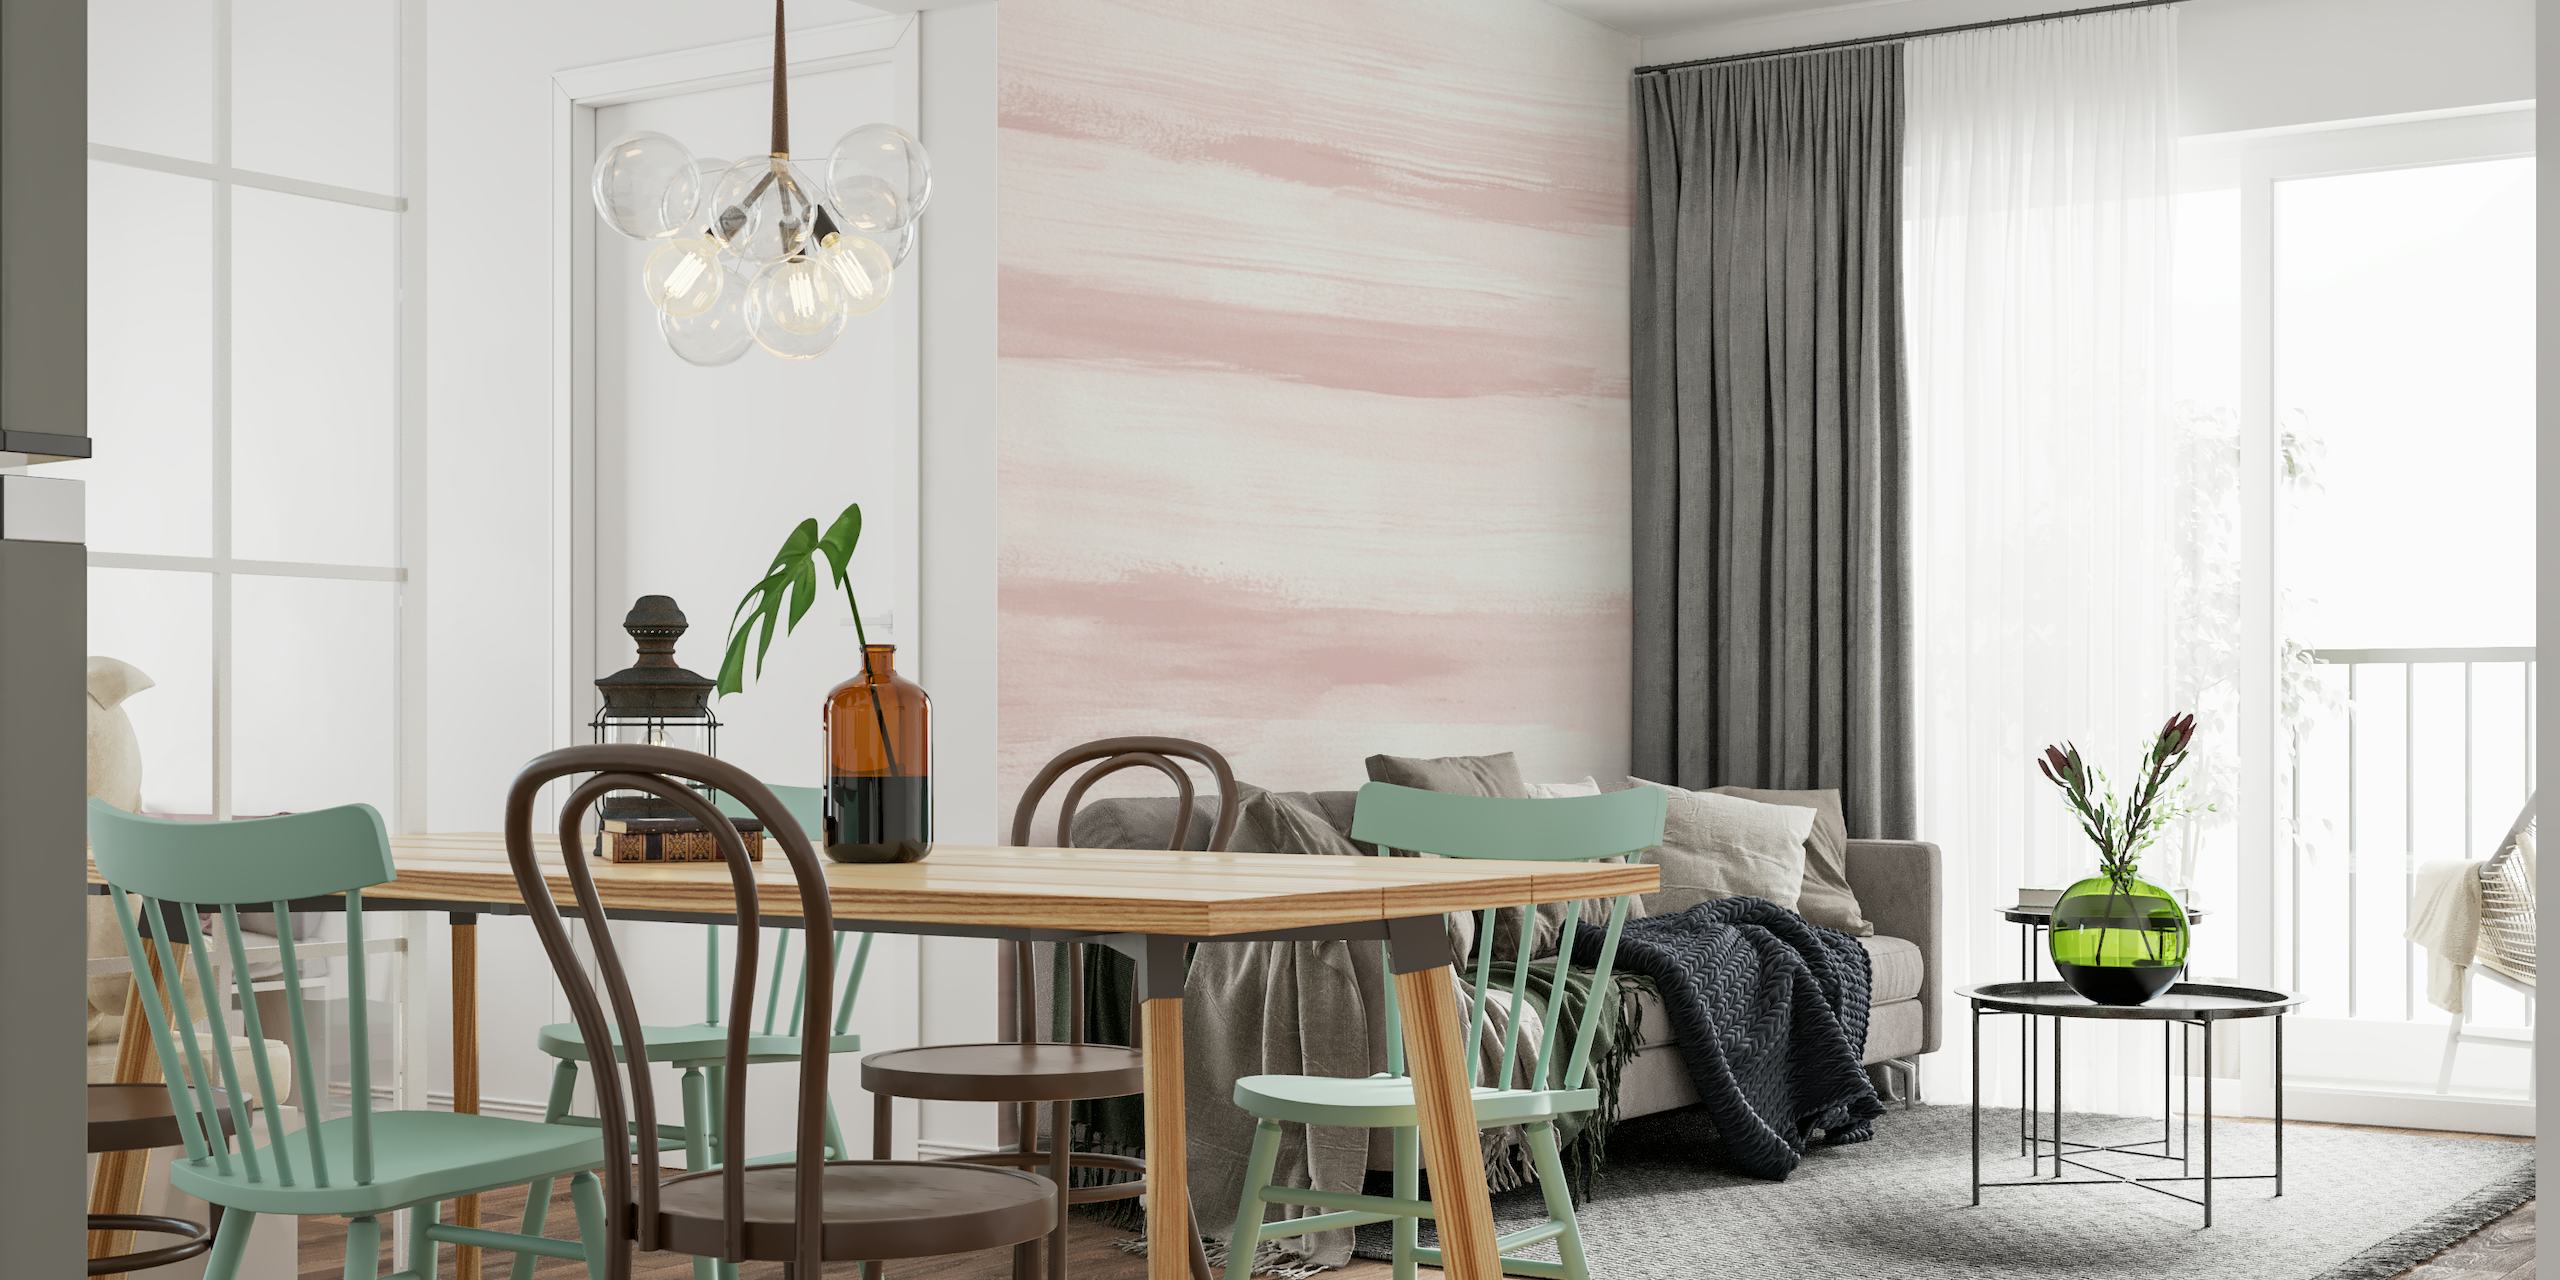 Fotomural de pared con rayas de acuarela de color suave y rubor para crear un ambiente sereno en la habitación